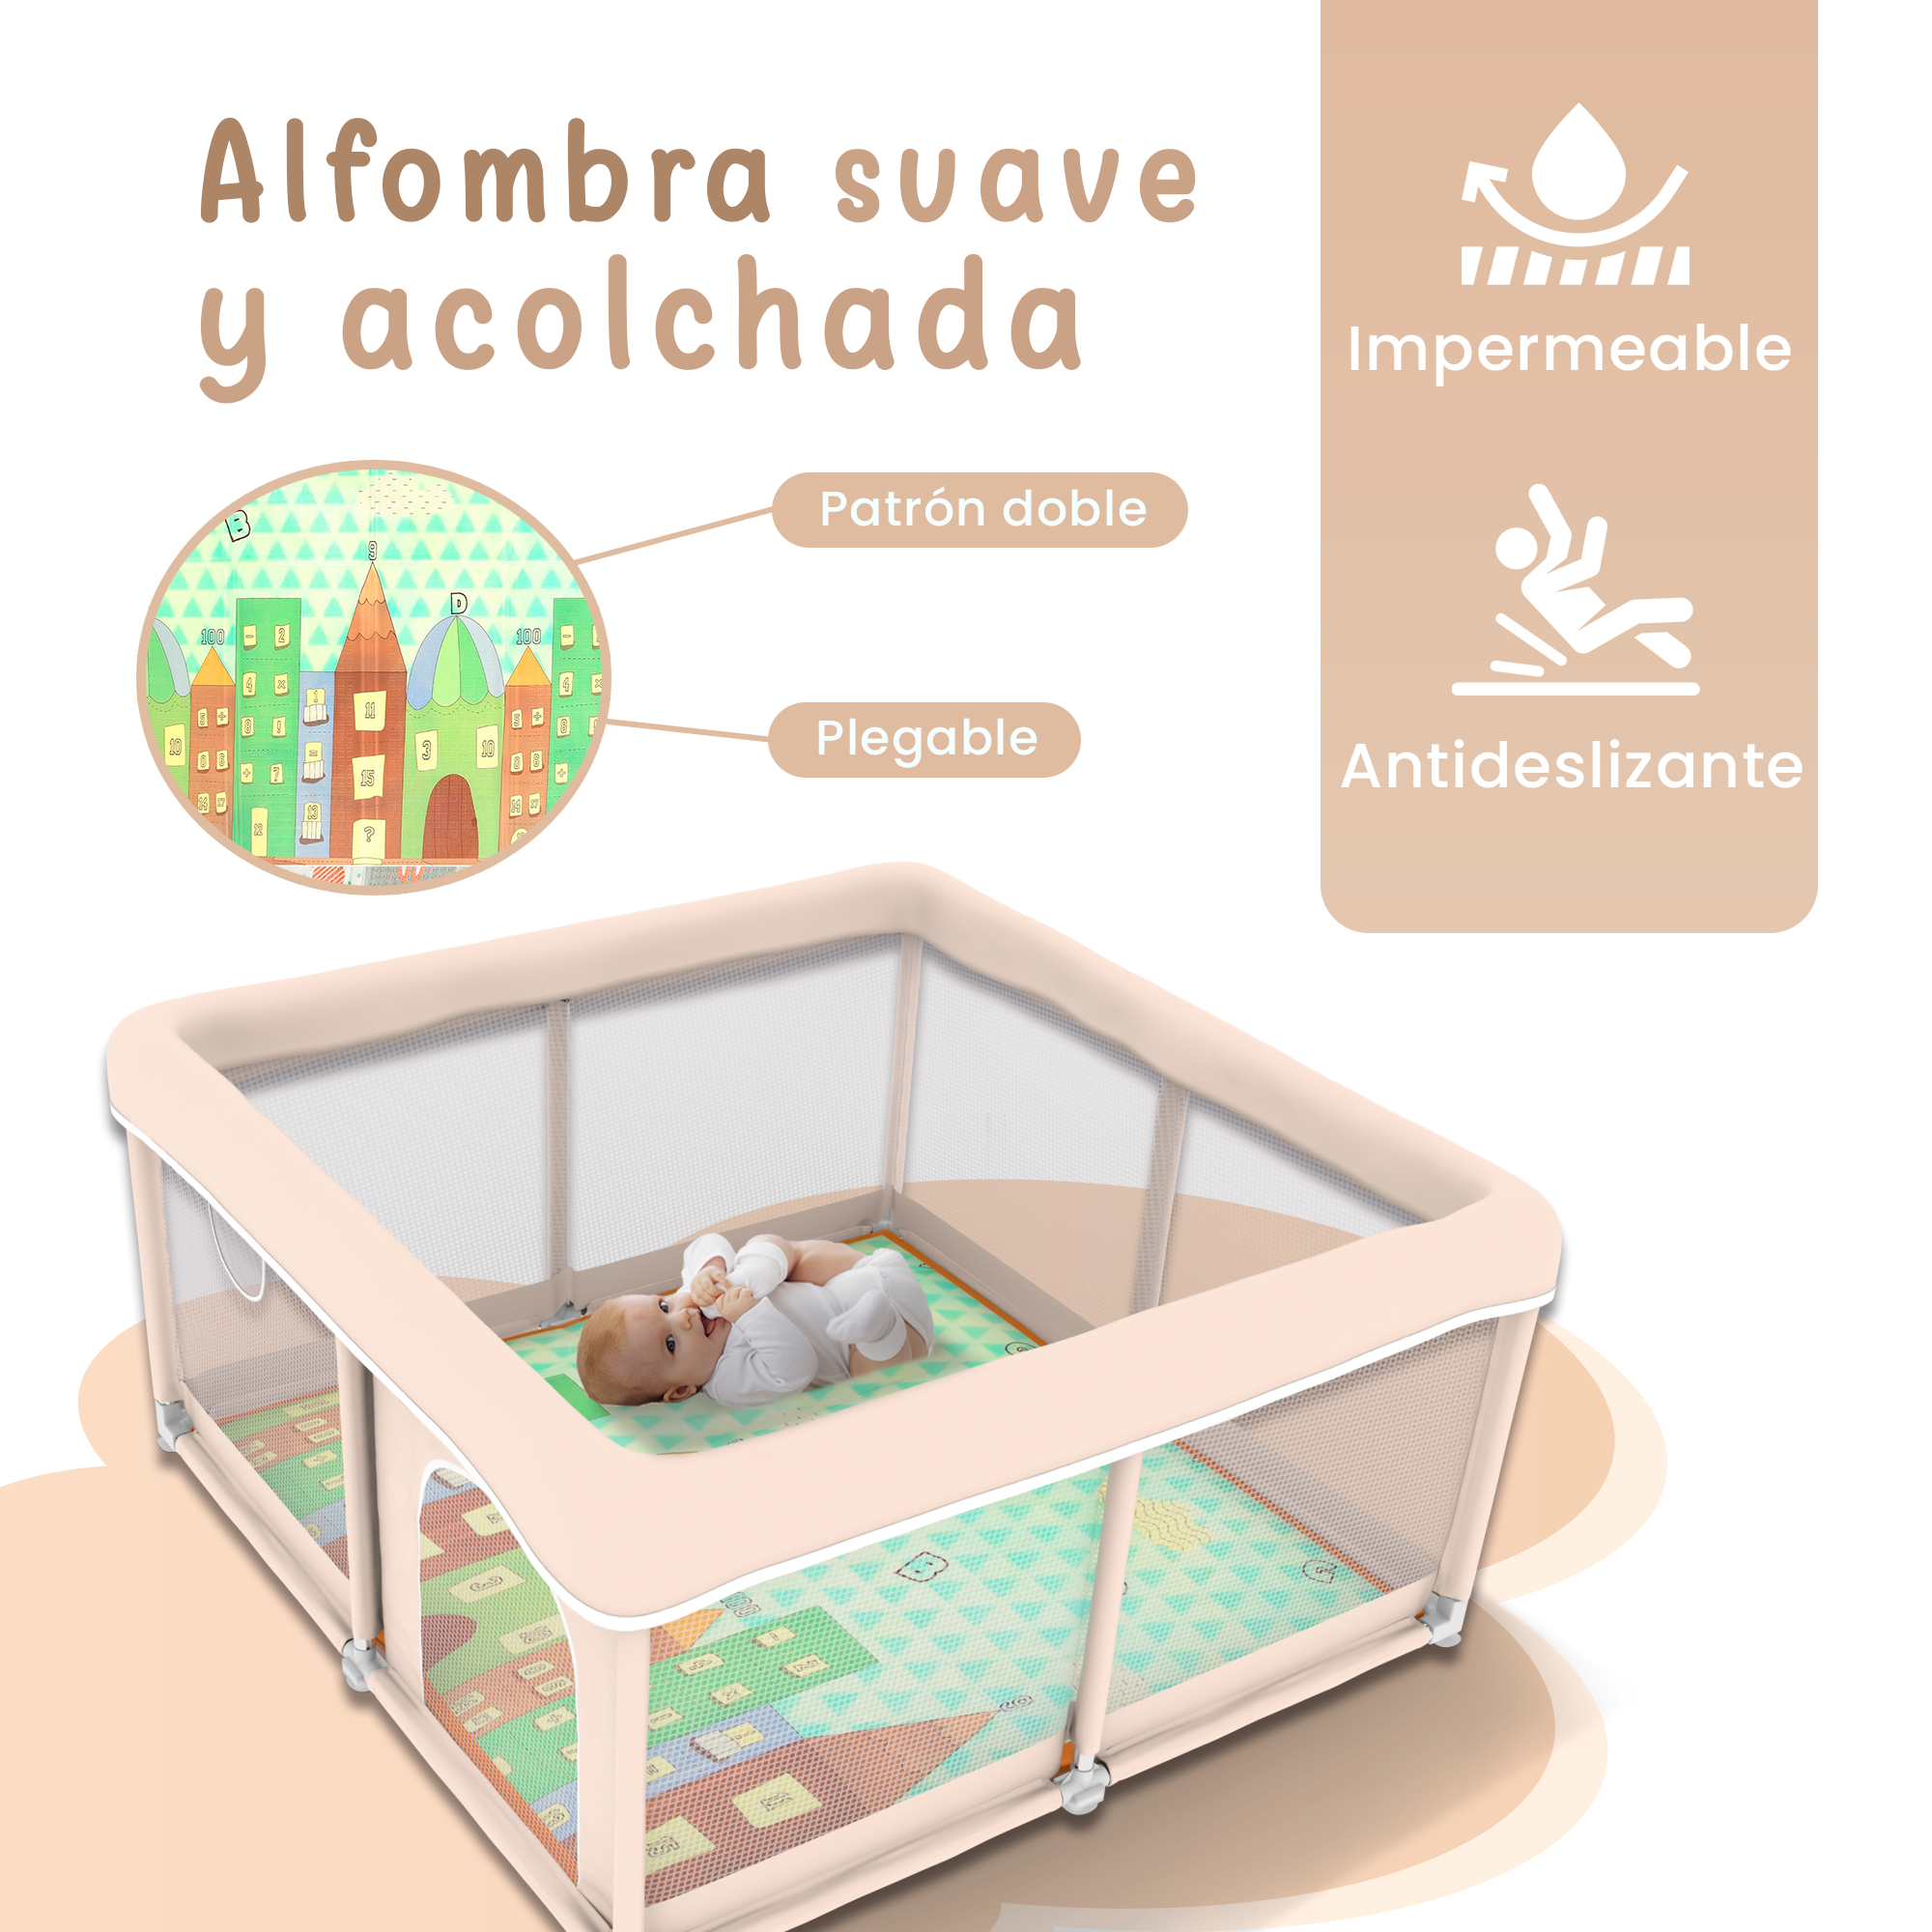 Parque Infantil para bebes acolchado con Alfombra y Agarraderas